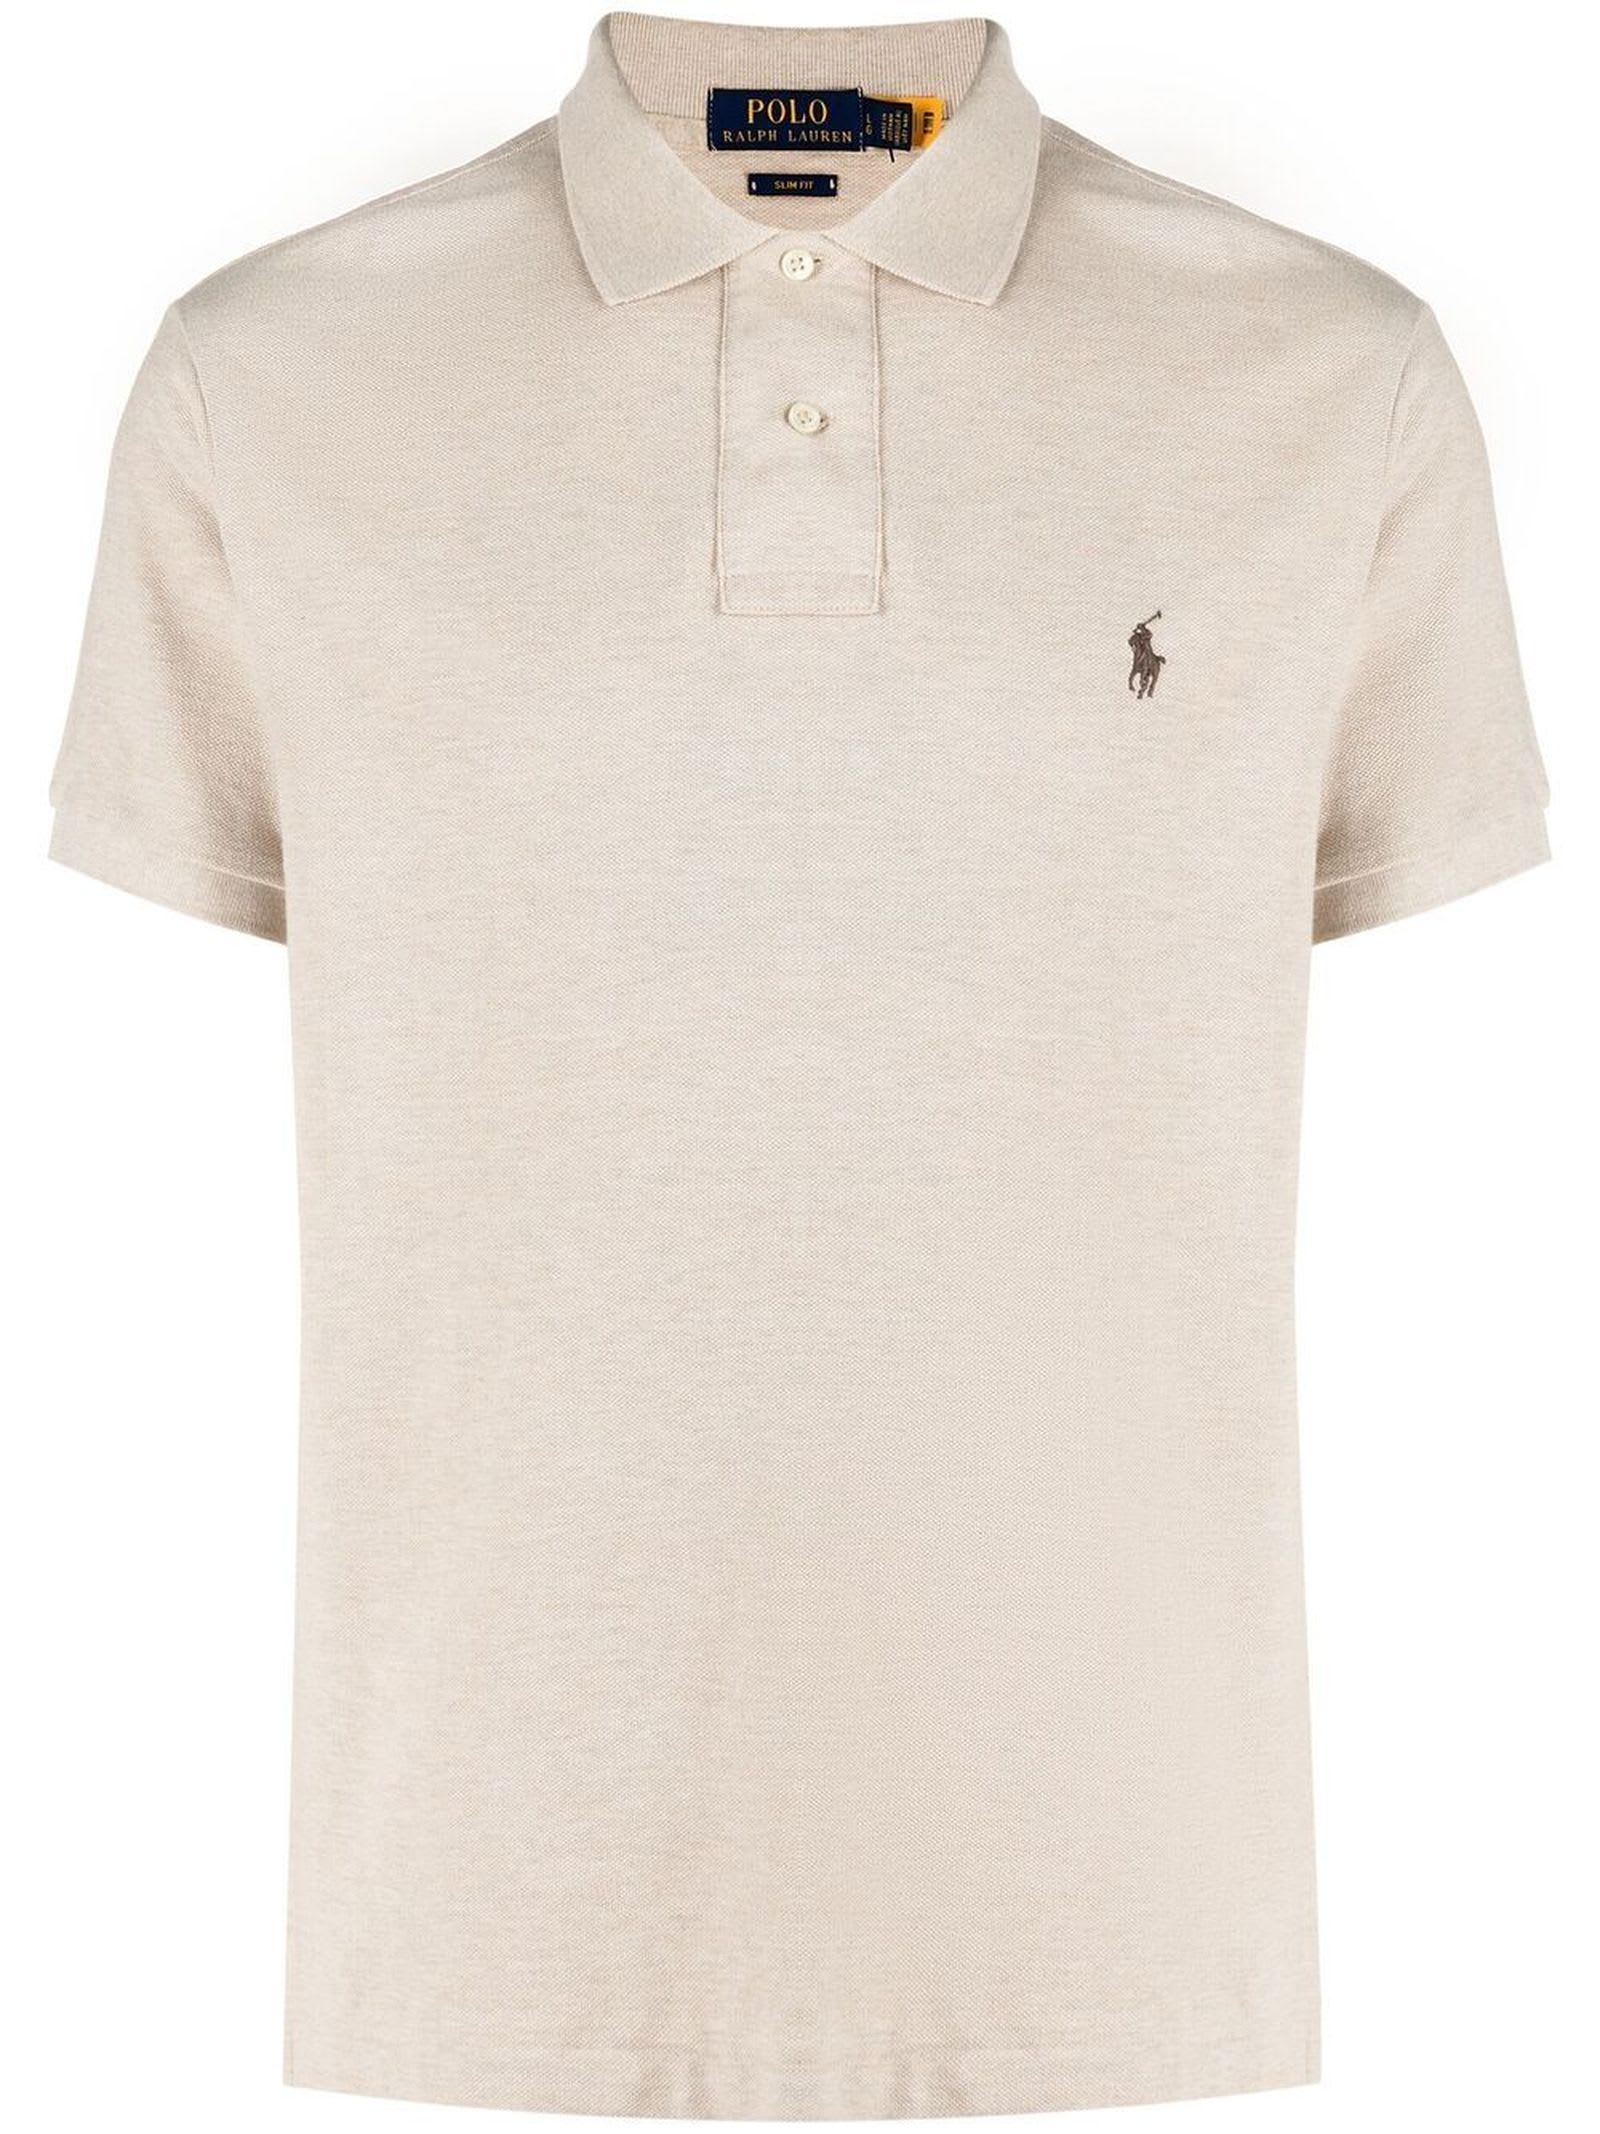 Ralph Lauren Beige Cotton Polo Shirt